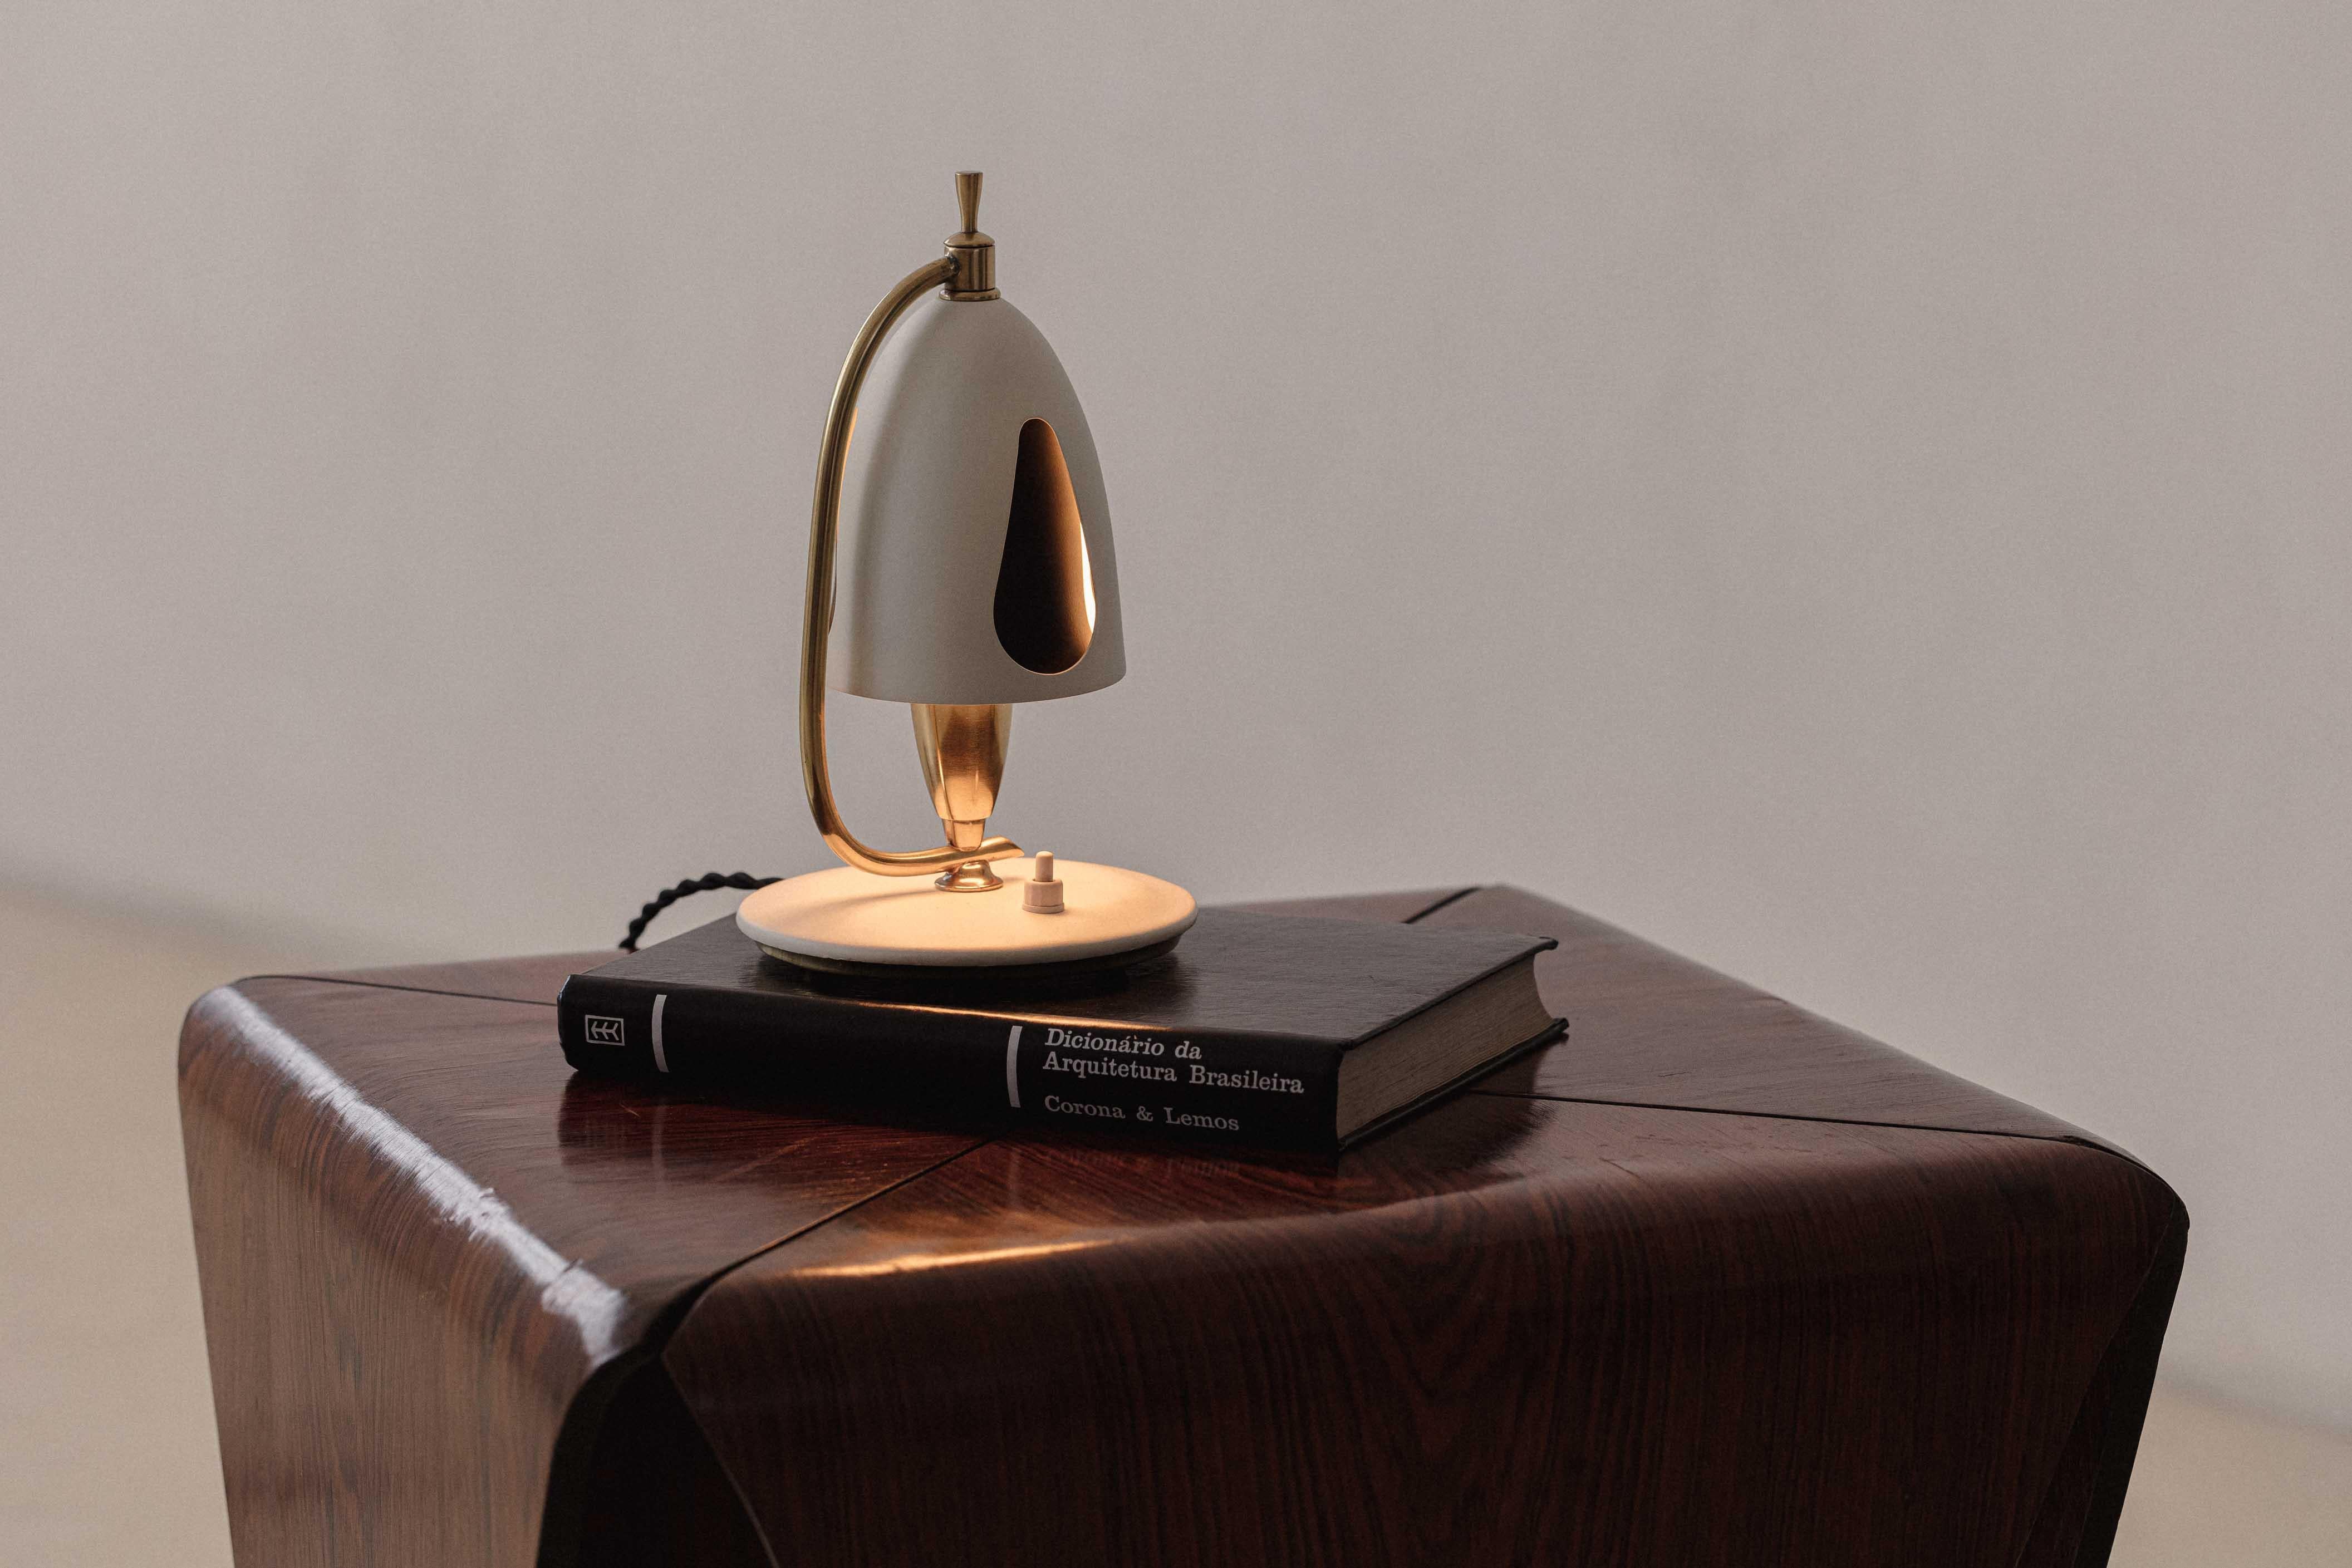 Entworfen im Jahr circa. Diese um 1950 von der brasilianischen Firma Carlo Montalto & Filhos entworfene Tischleuchte verleiht jedem Ambiente einen charmanten Touch - egal, ob das Licht an oder aus ist.
Carlo Montalto wurde in den 1930er Jahren von